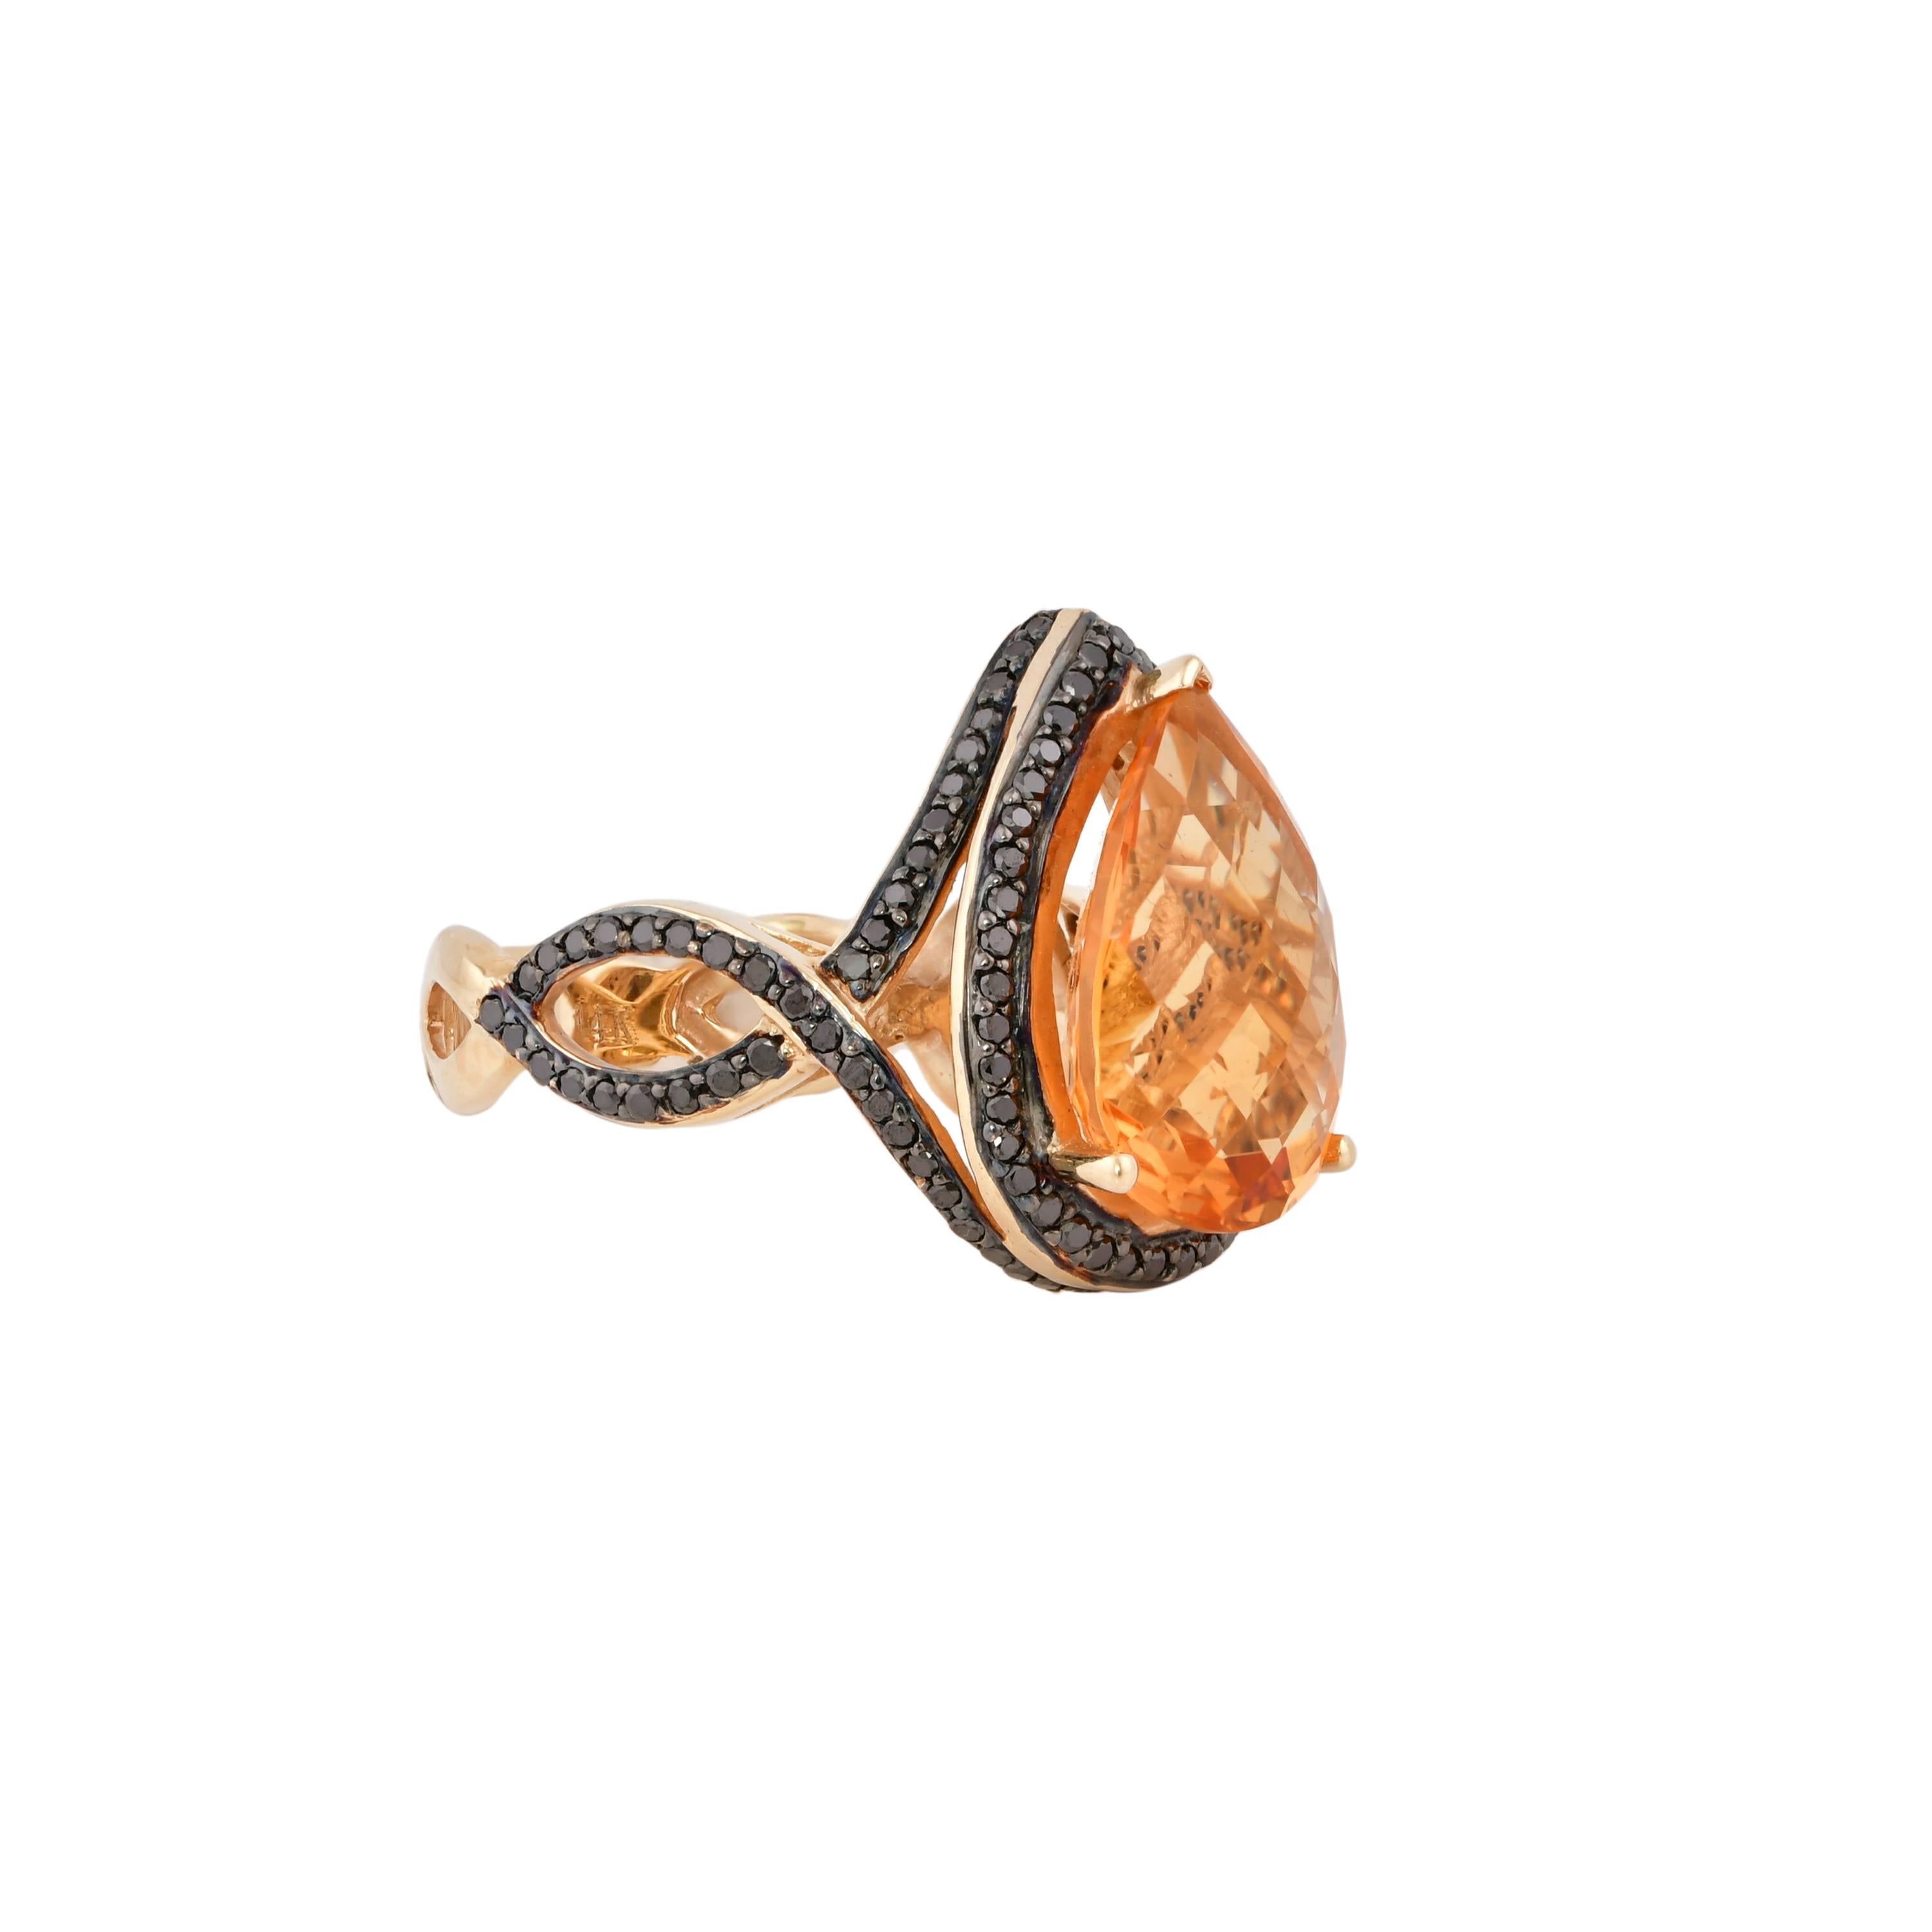 Glamorous Gemstones - Sunita Nahata a commencé sa carrière en tant que négociante en pierres précieuses, et cette collection particulière reflète son amour pour les pierres semi-précieuses multicolores. Cette bague présente une grappe des plus